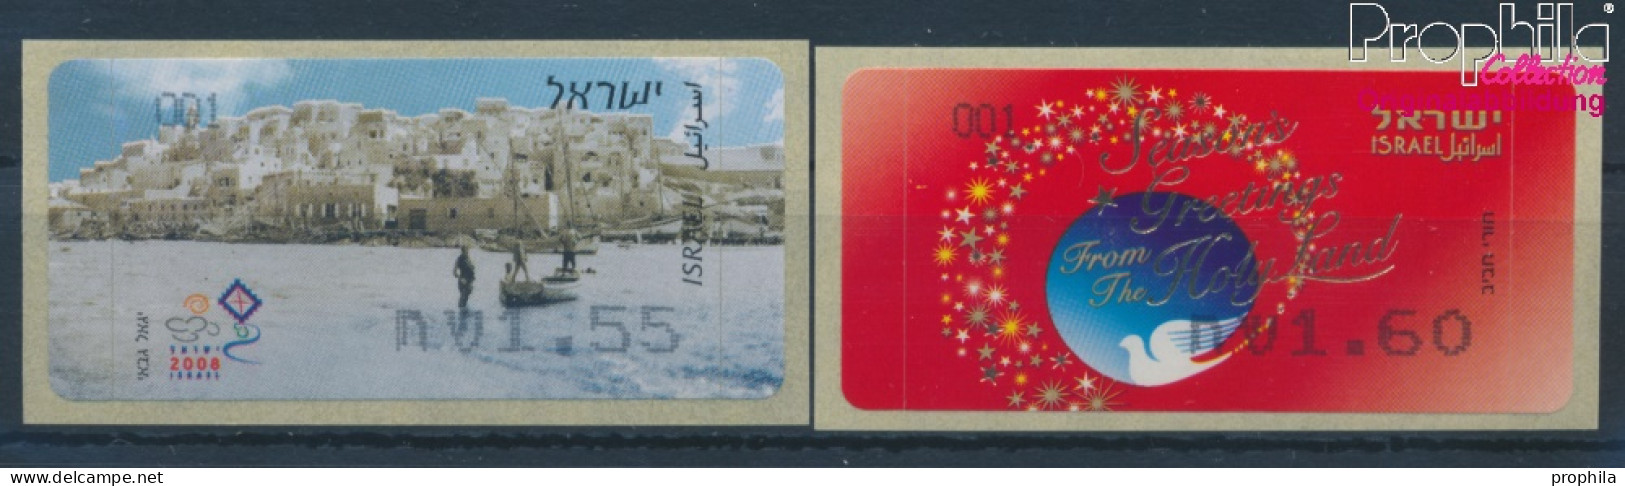 Israel ATM59-ATM60 Postfrisch 2008 Automatenmarken (10369158 - Automatenmarken (Frama)